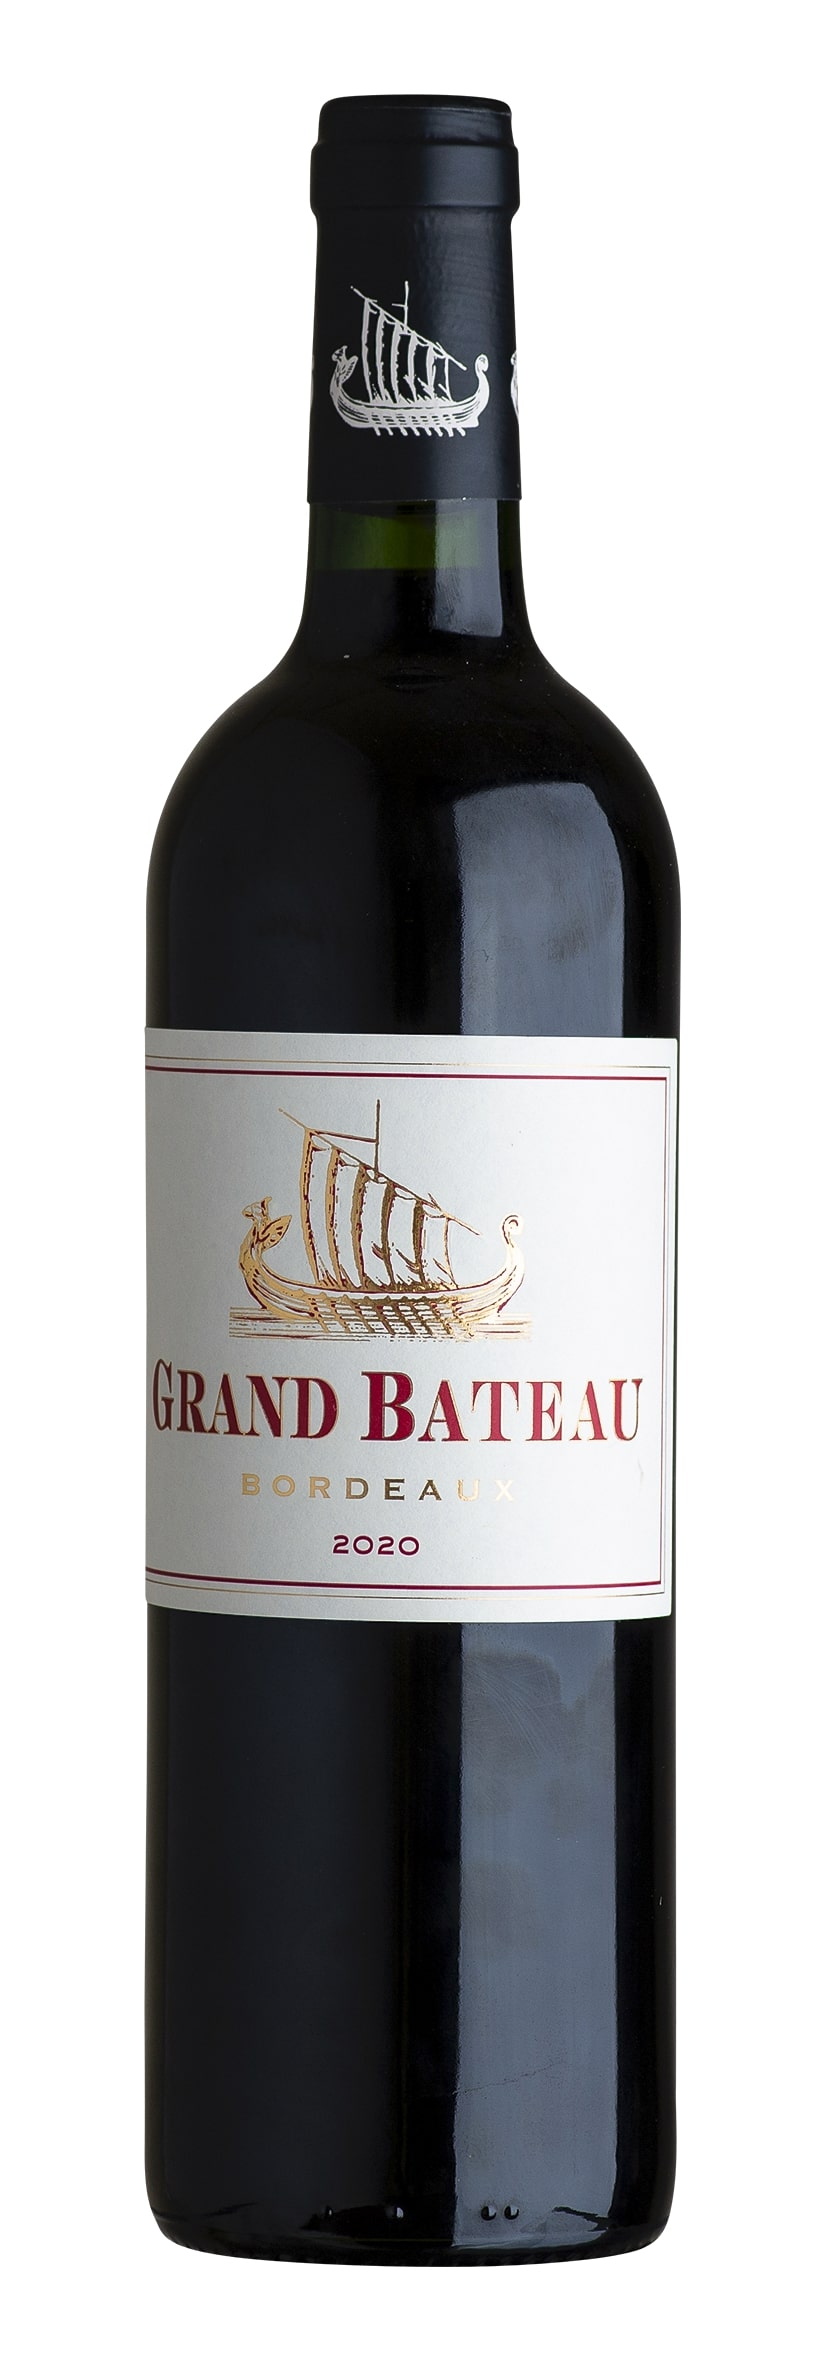 Bordeaux rouge AOC Grand Bâteau 2020